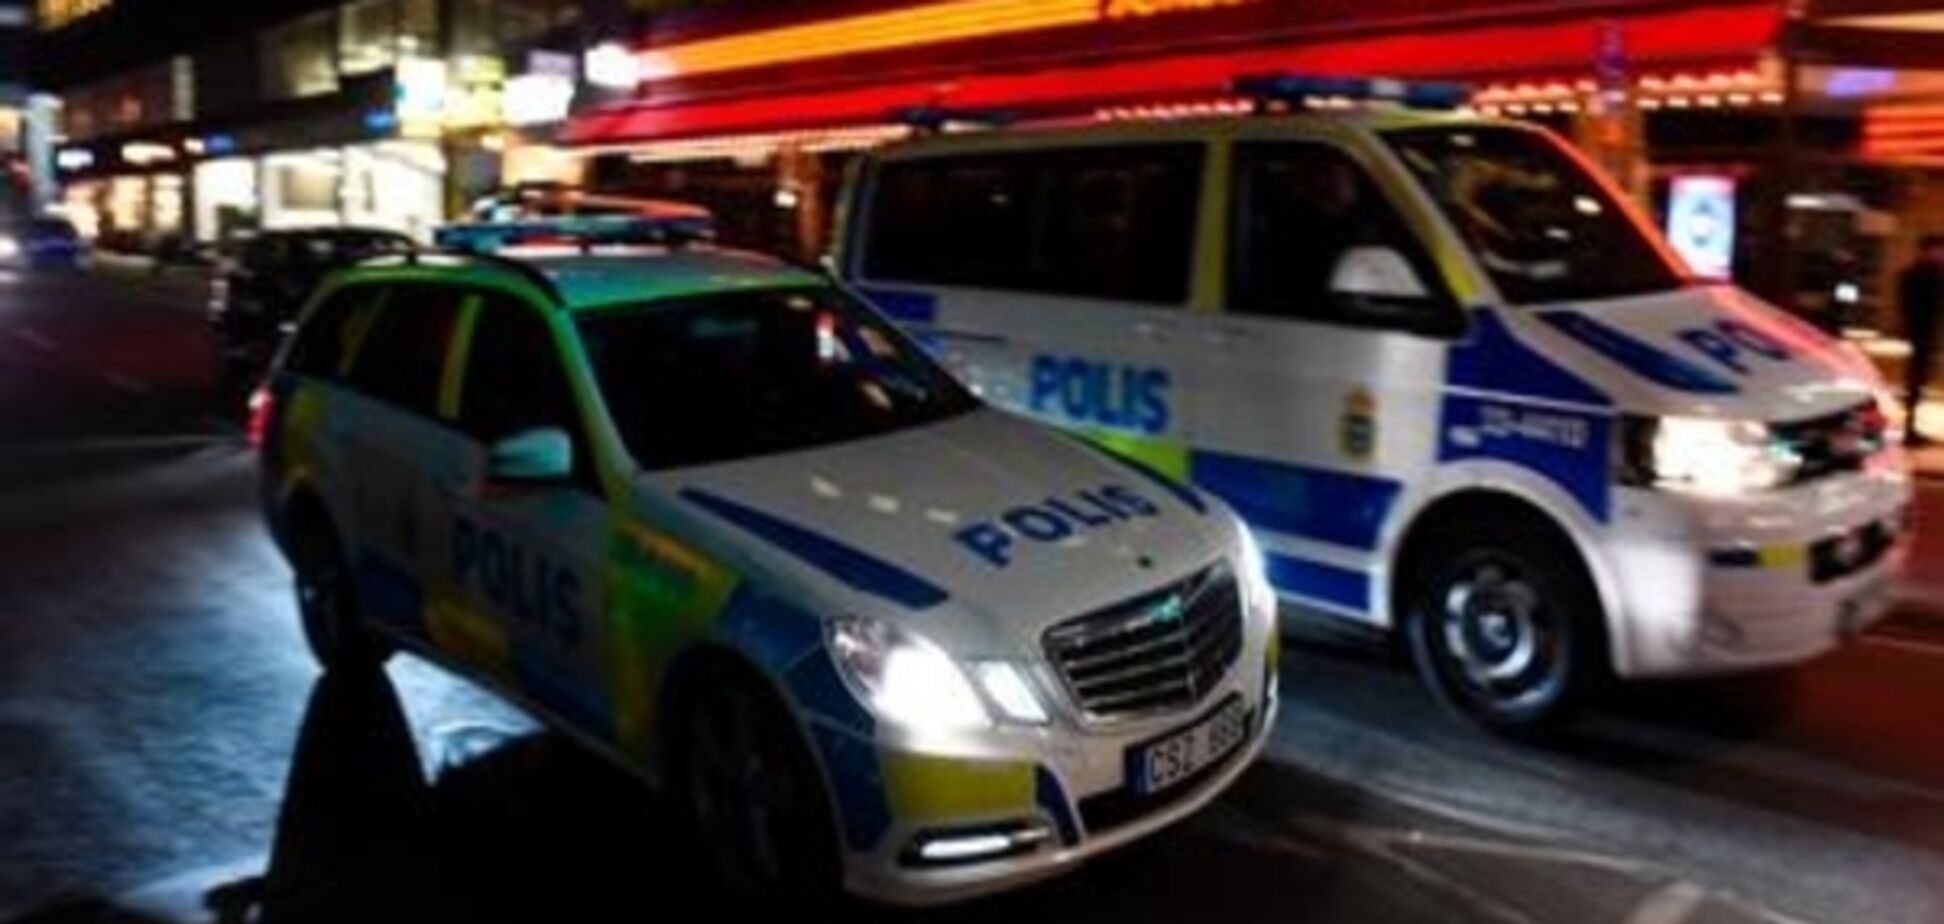 Напад у Стокгольмі: Поліція затримала підозрюваного